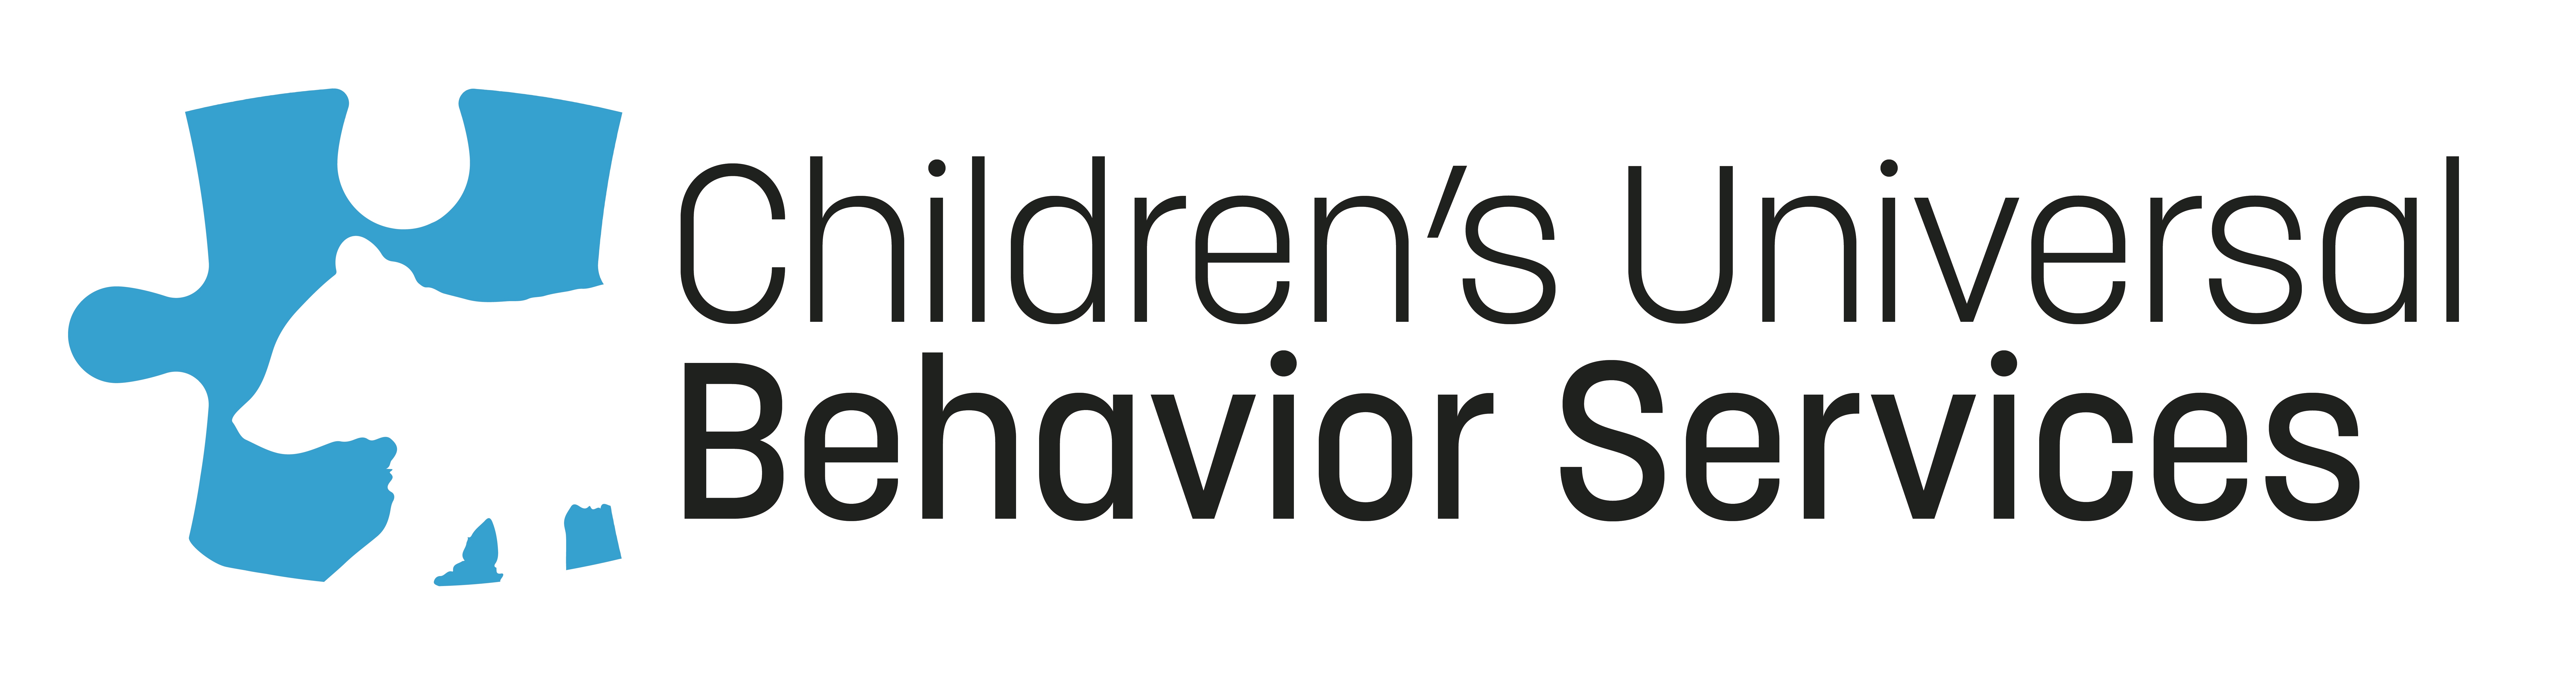 Children's Universal Behavioral Services